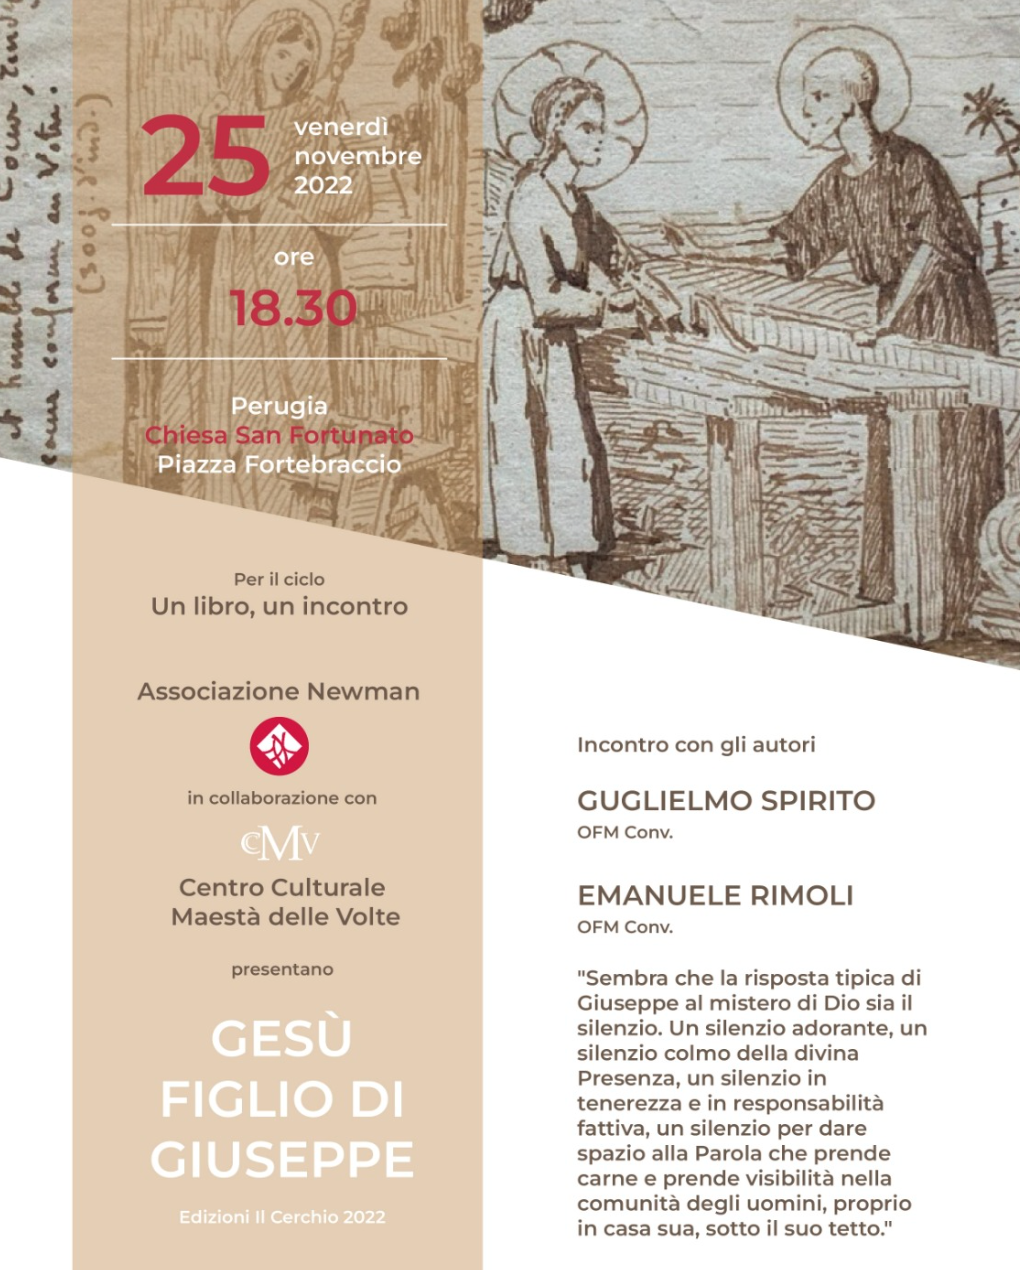 Featured image for “Perugia: Gesù figlio di Giuseppe”